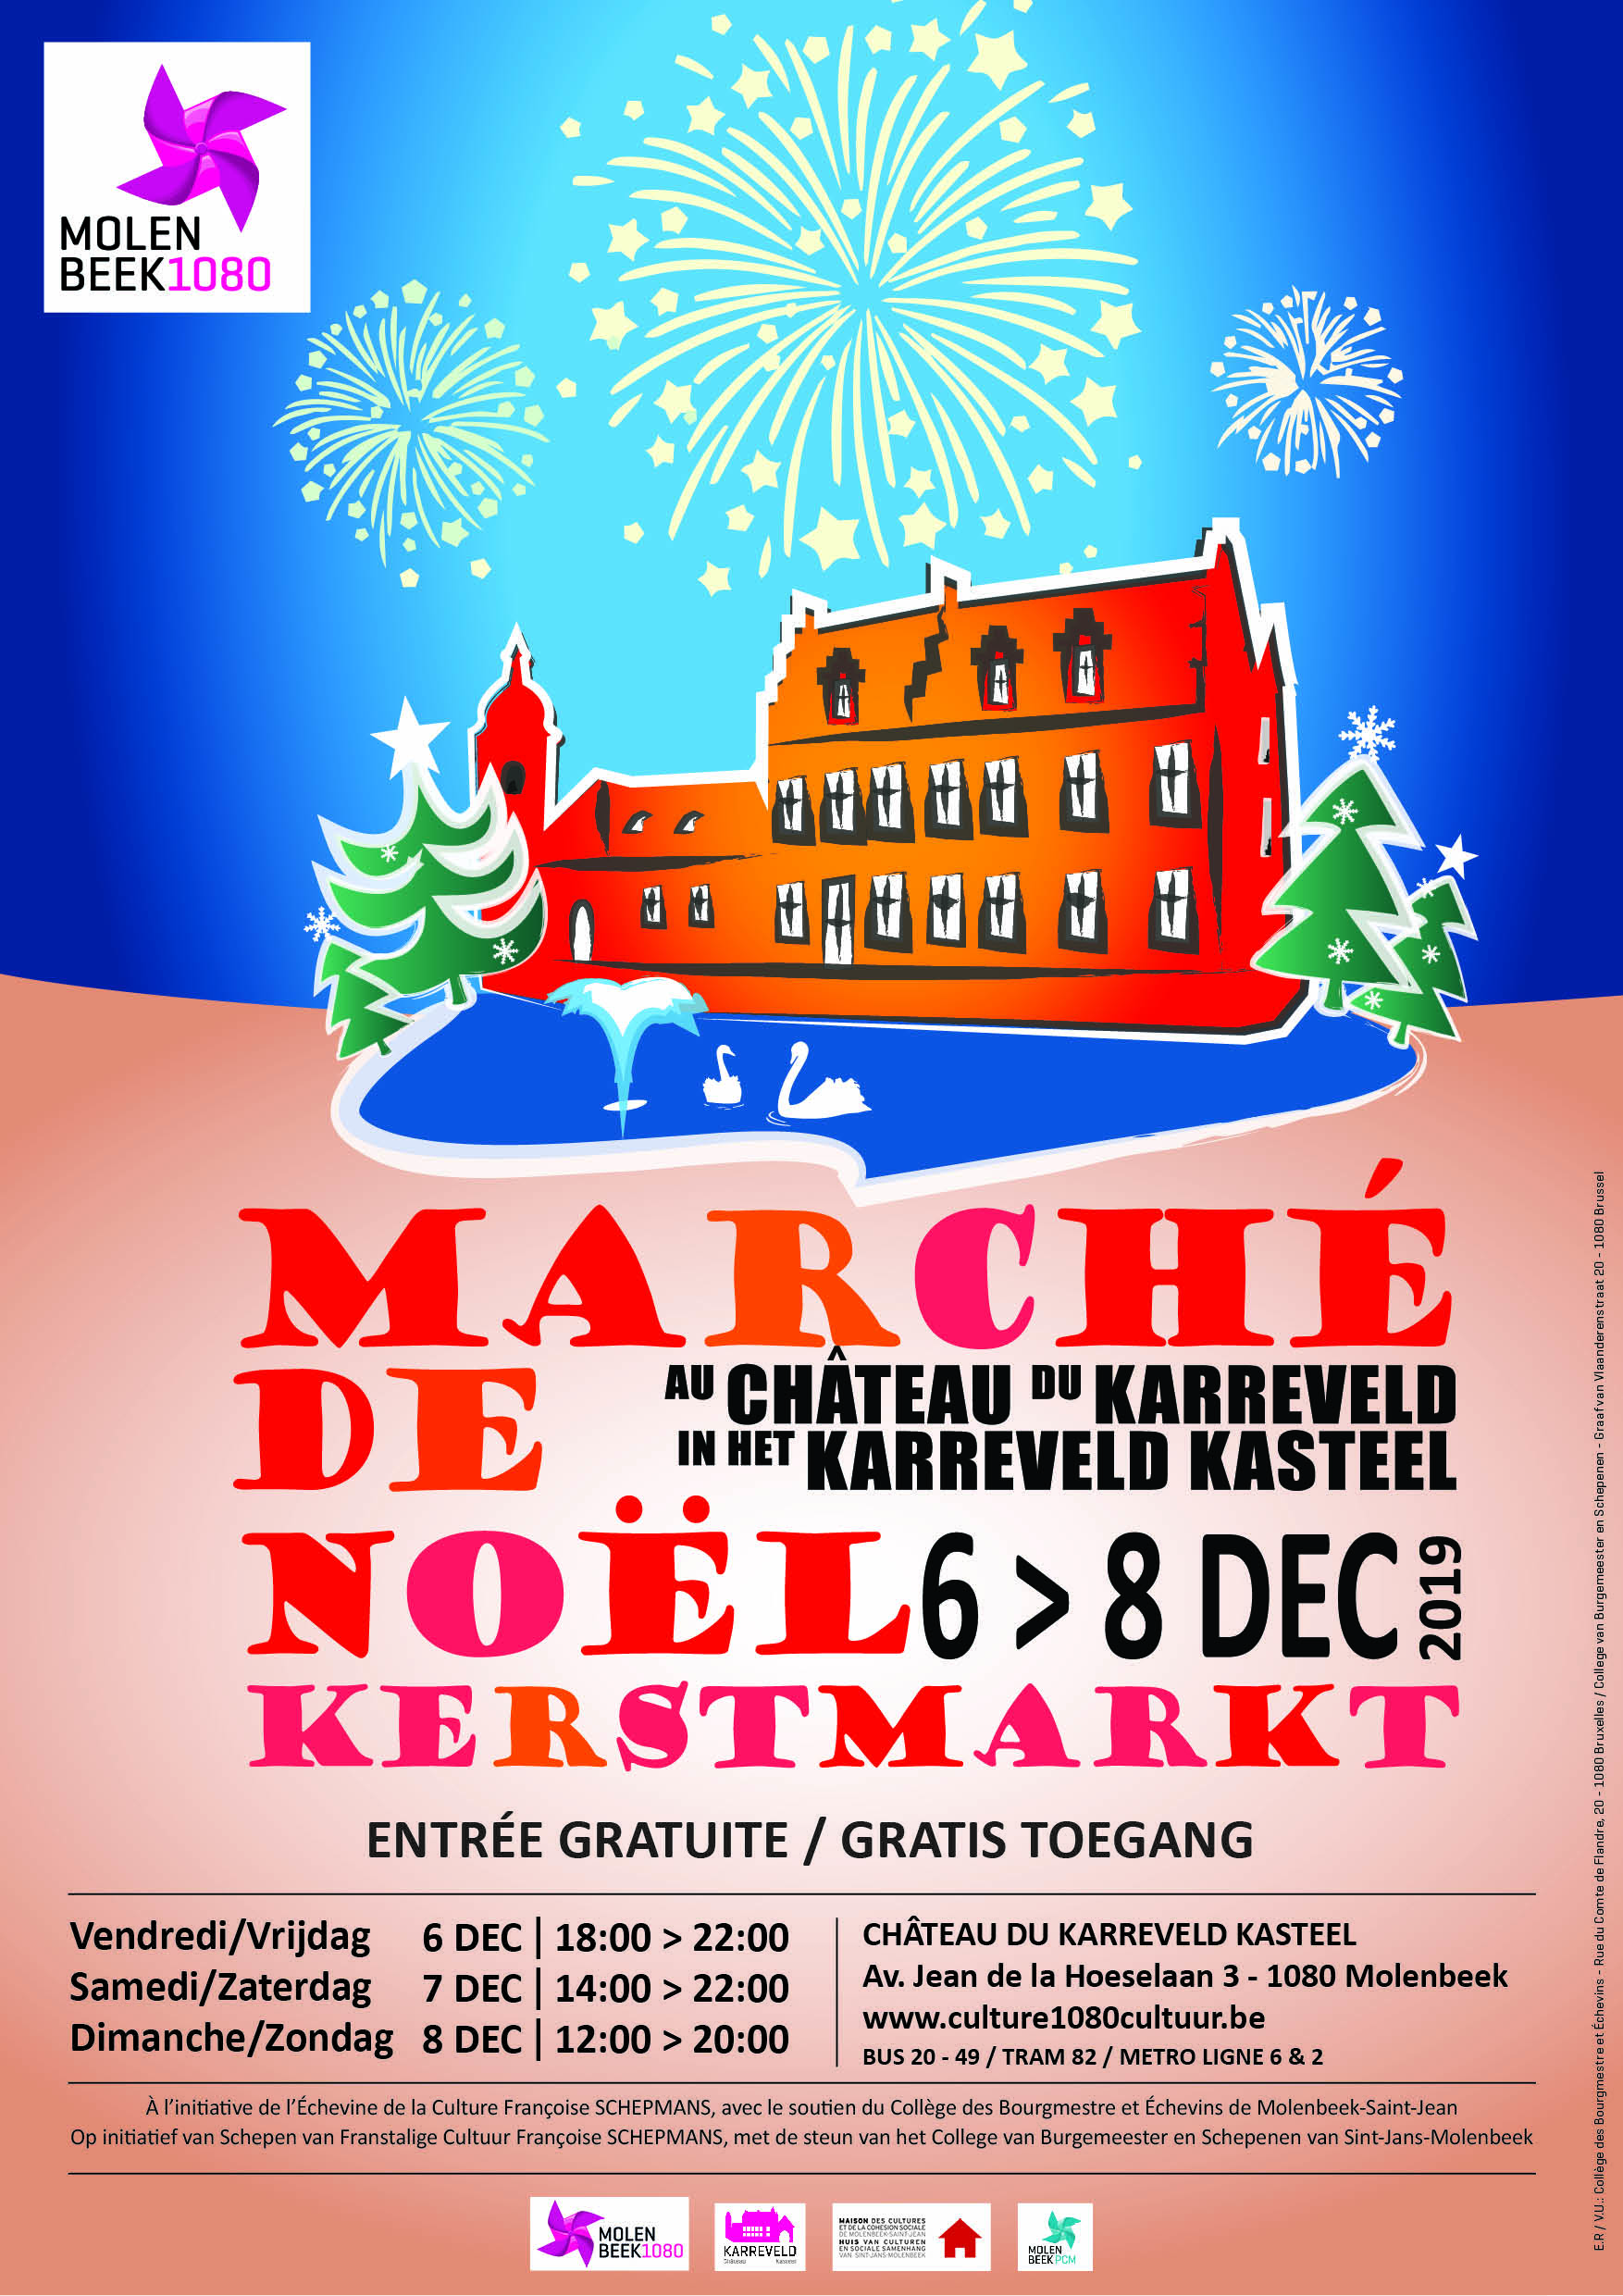 Molenbeek MarcheNoel Kerstmarkt 2019